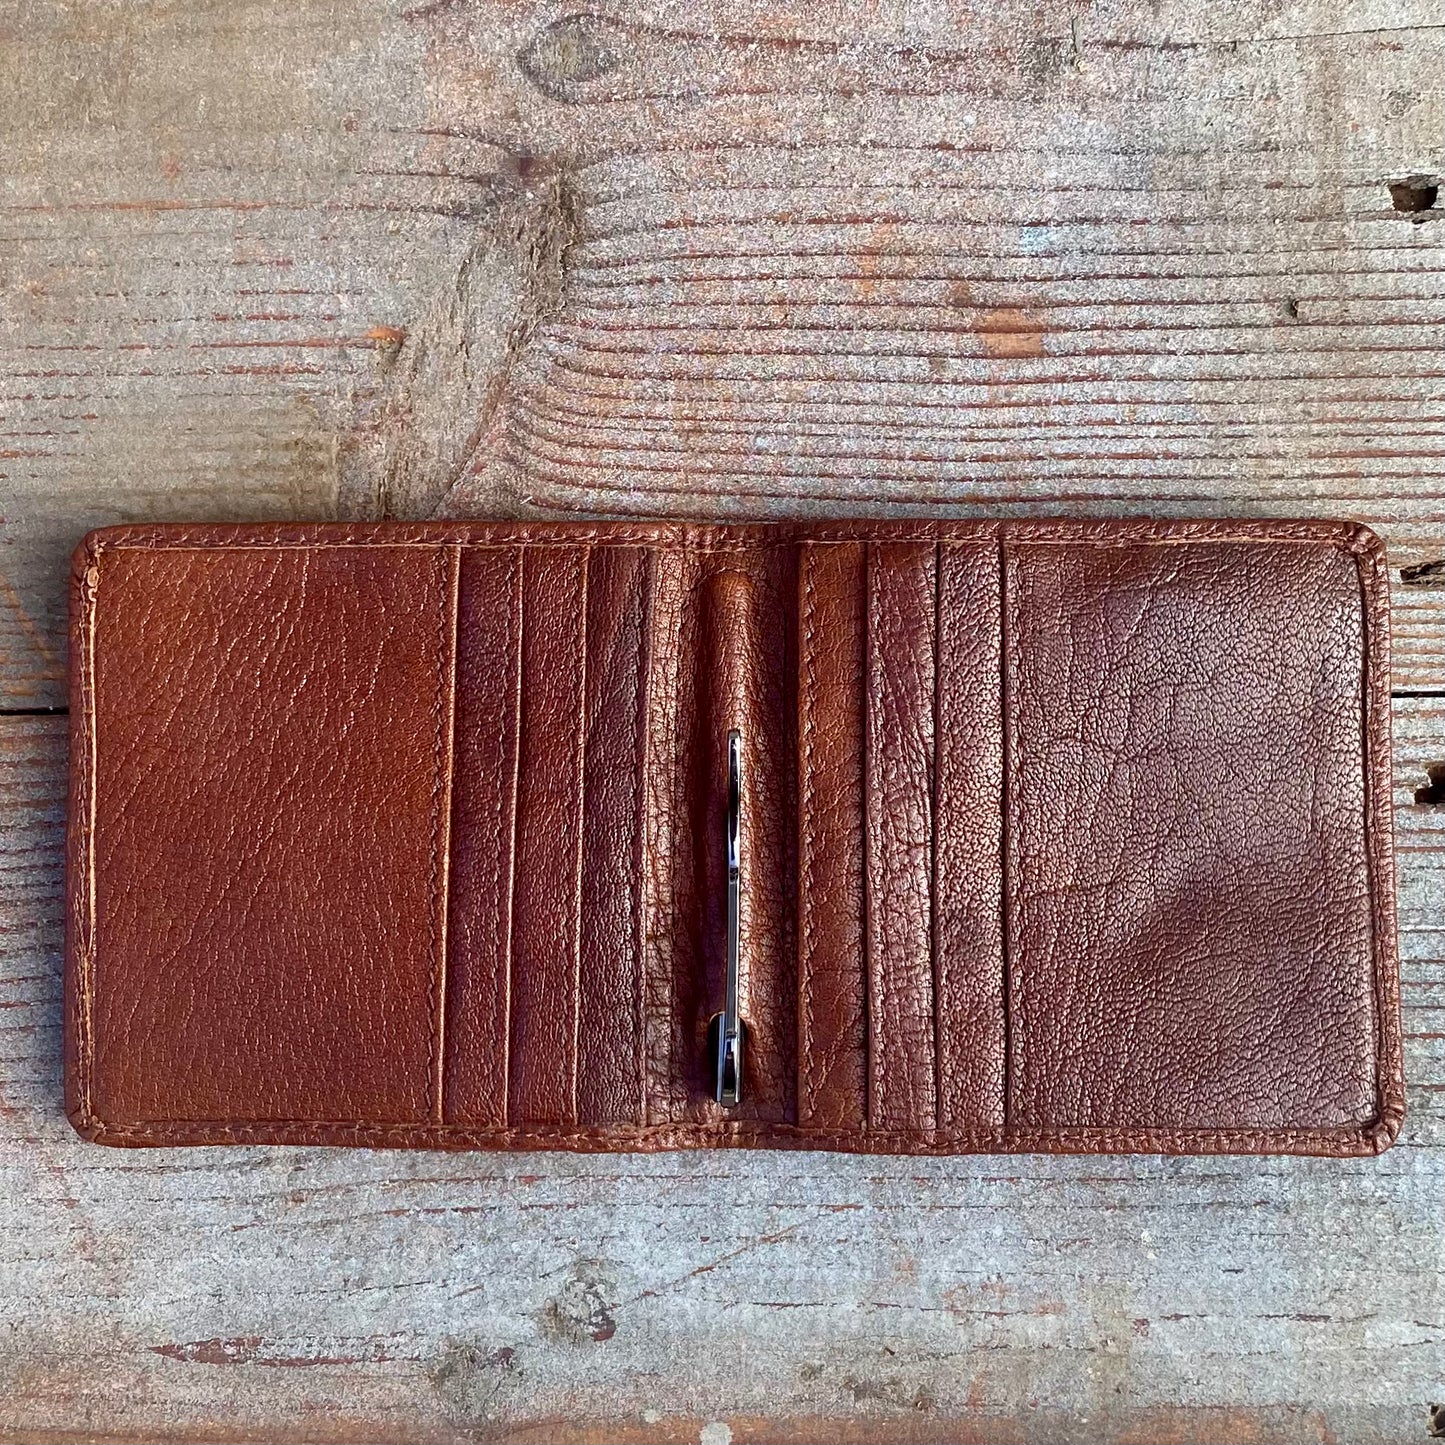 His Wallet